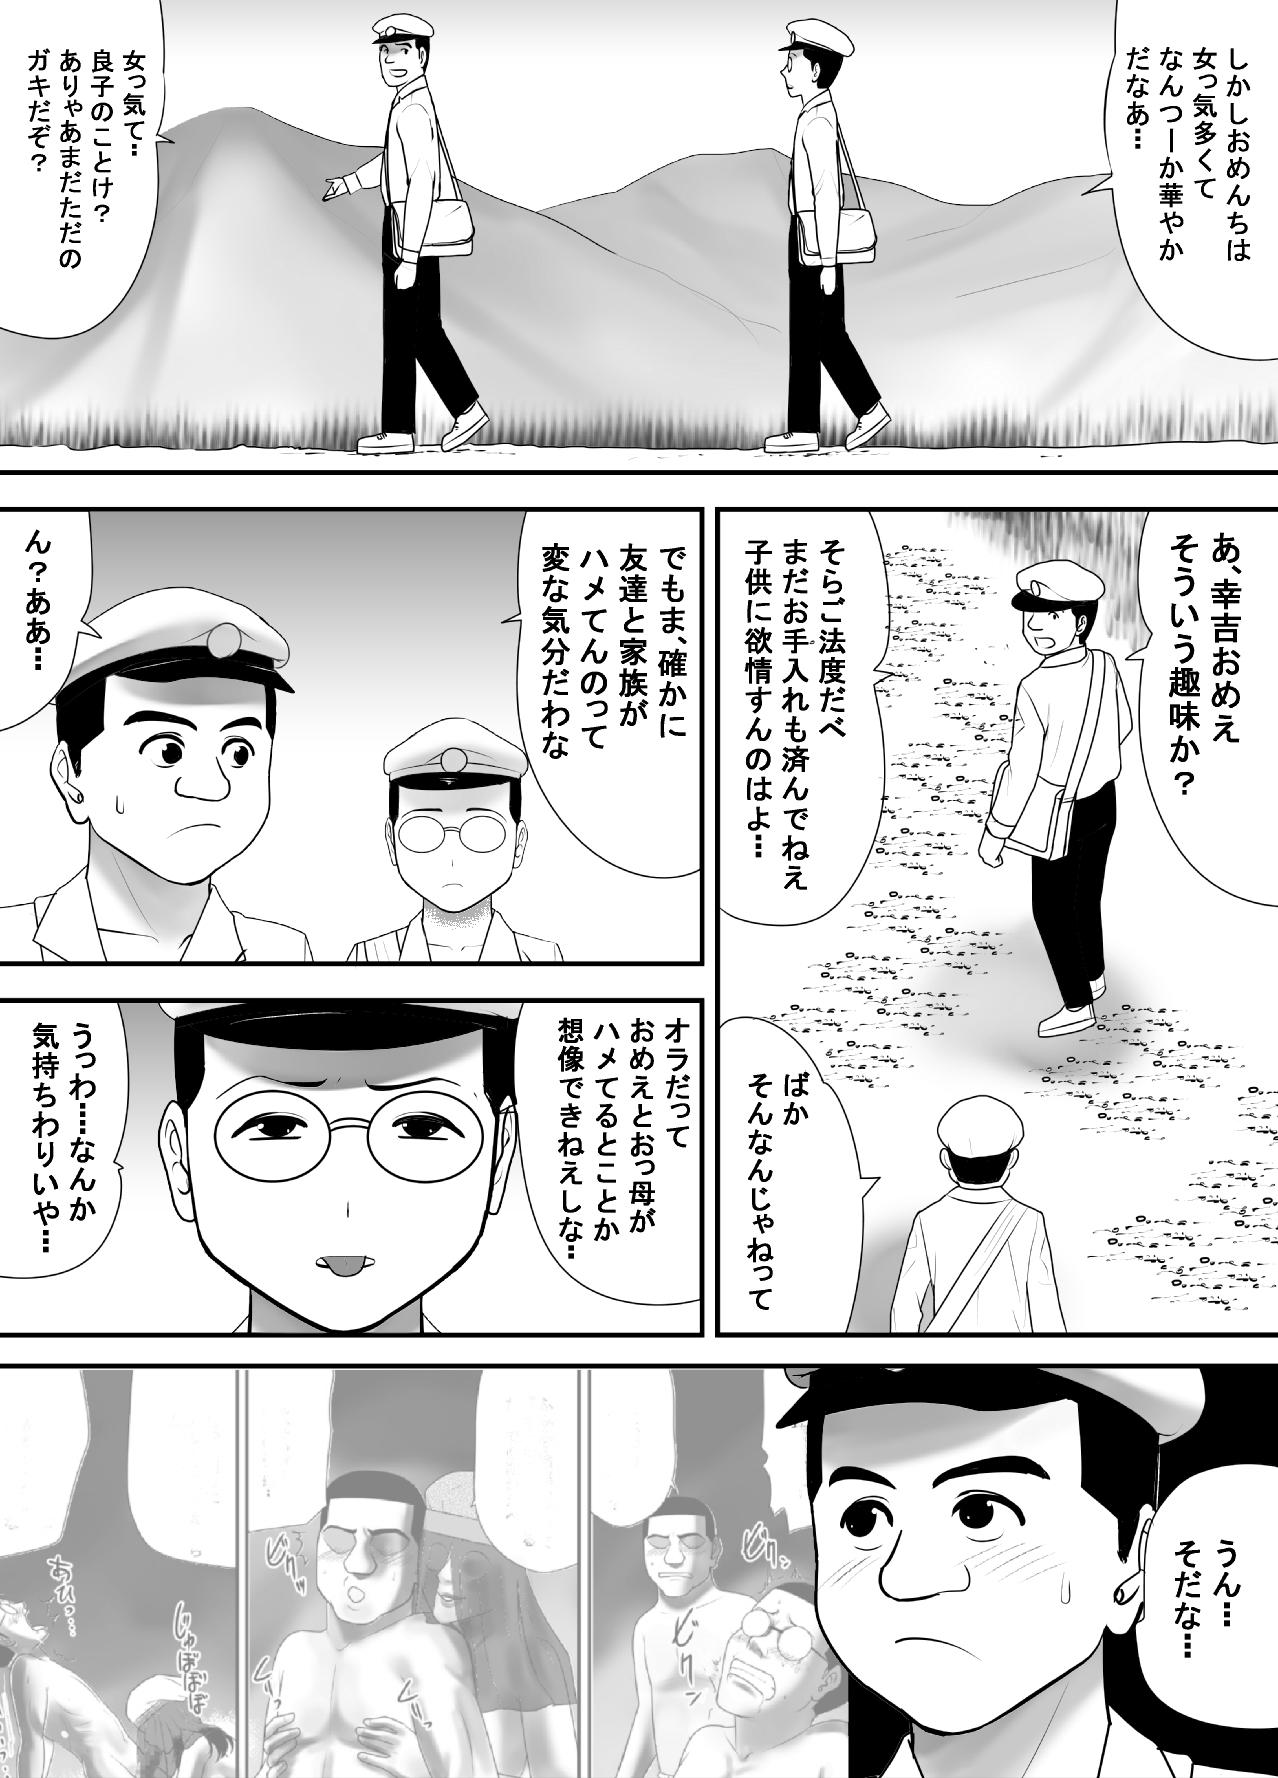 Grandma Subete o Ukeirete Kureru Tomodachi no Okka-san - Original Muscle - Page 7